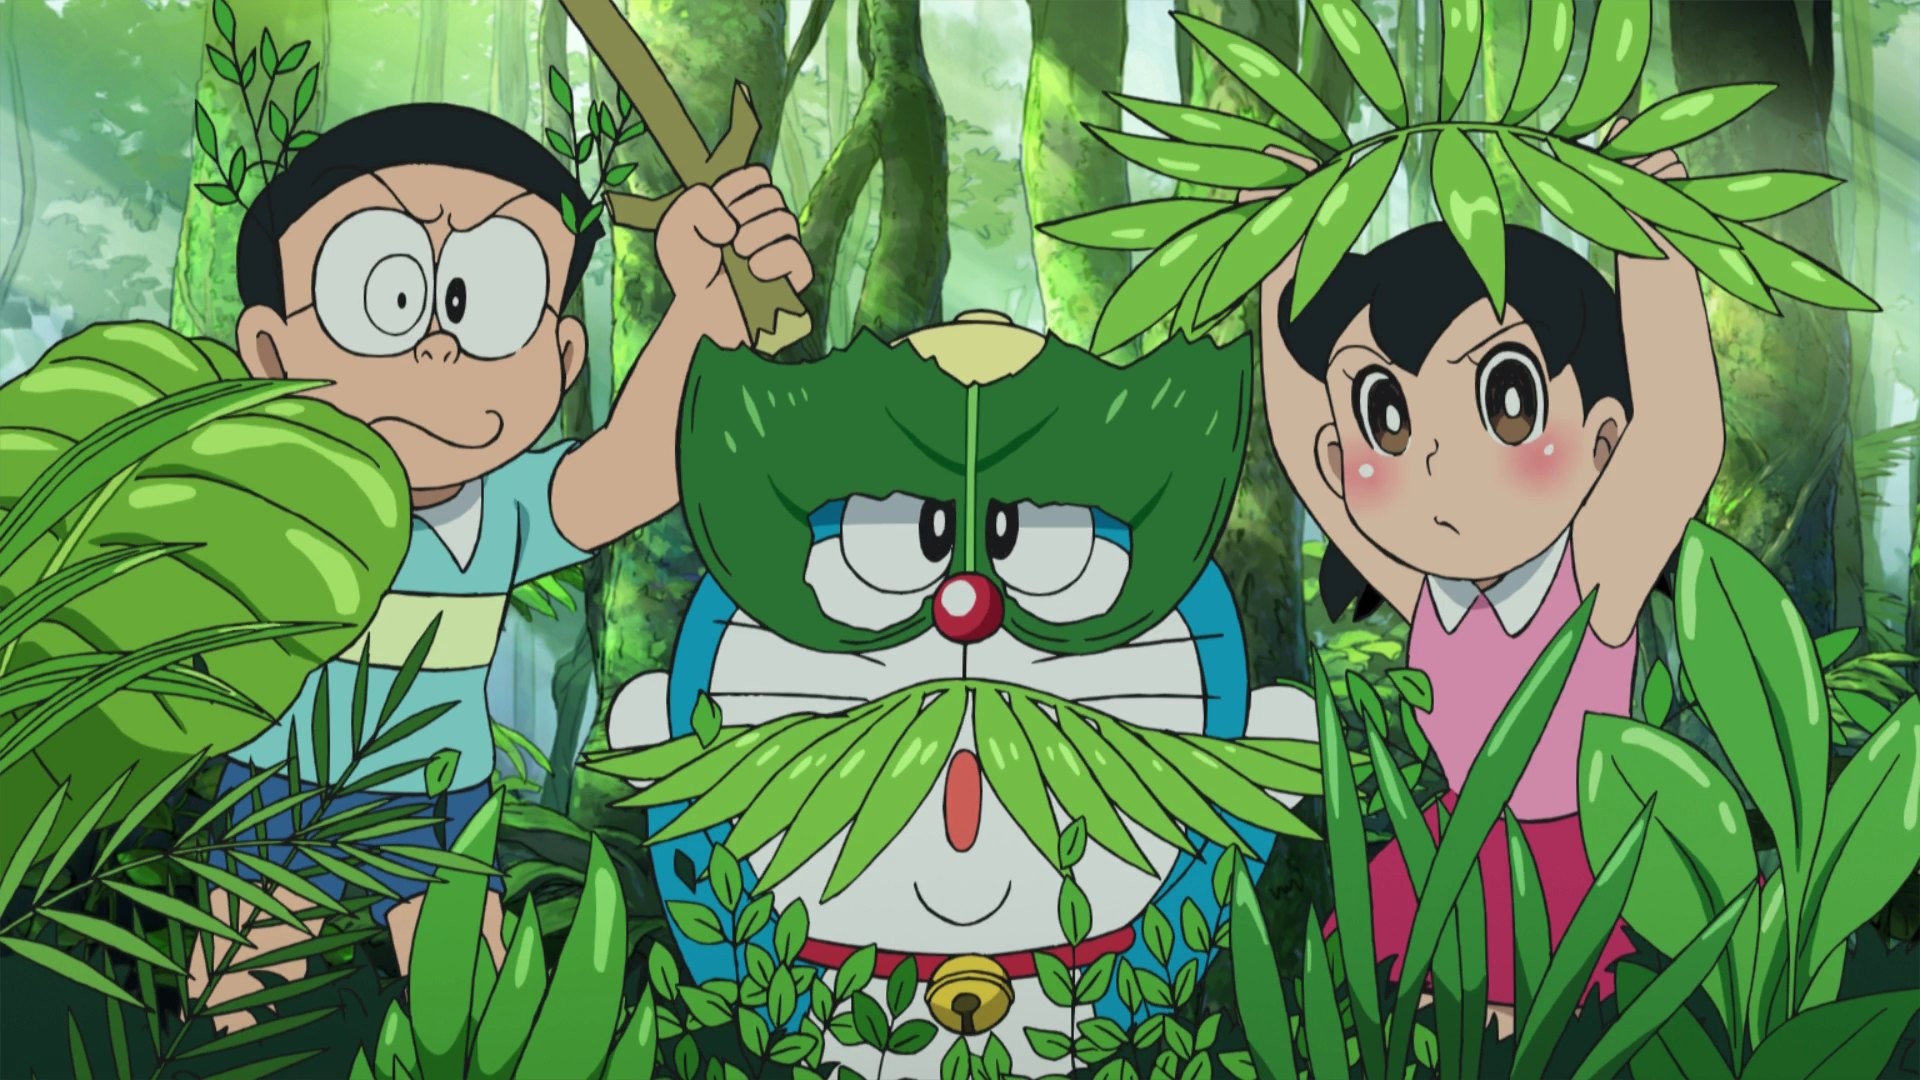 Doraemon - Hình nền (Doraemon and Friends Wallpaper 2018): Hãy khám phá bộ sưu tập hình nền Doraemon và bạn bè mới nhất năm 2018! Từ Nobita đến Shizuka hay Jaian, tất cả đều xuất hiện trên những bức hình nền đầy màu sắc và hài hước. Xem ngay để đem lại nét vui nhộn cho giao diện của bạn!